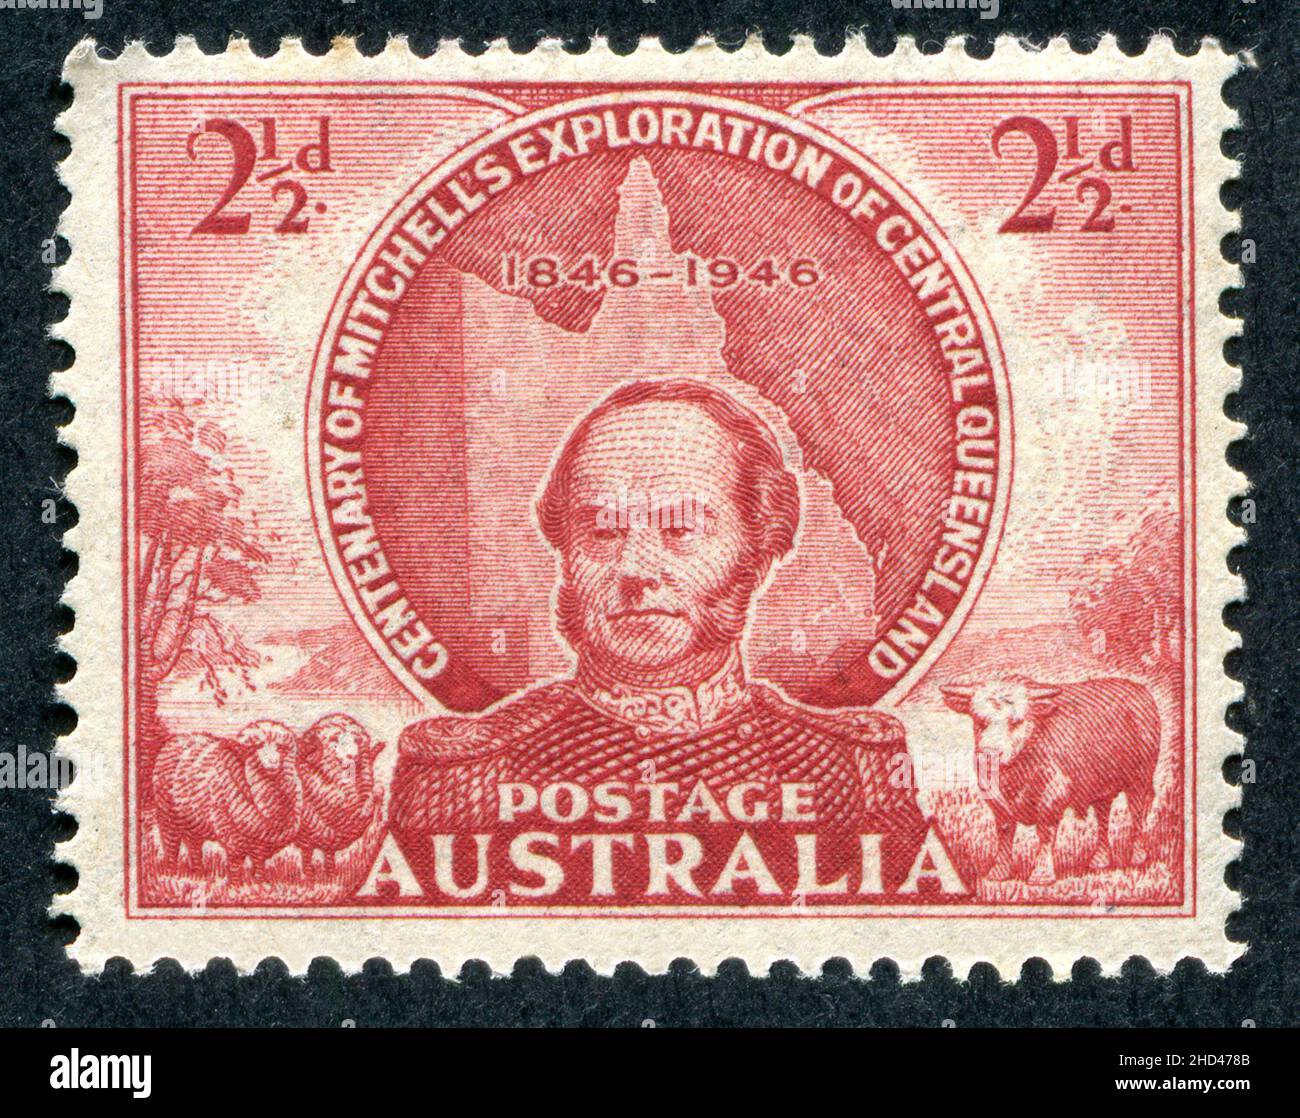 A 1946 Issue 2 1/2D Australische Briefmarke zum Gedenken an den 100. Jahrestag von Sir Thomas Mitchells Erkundung von Central Queensland, Australien. Der Stempel wurde von Frank D. Manley entworfen und graviert. Stockfoto